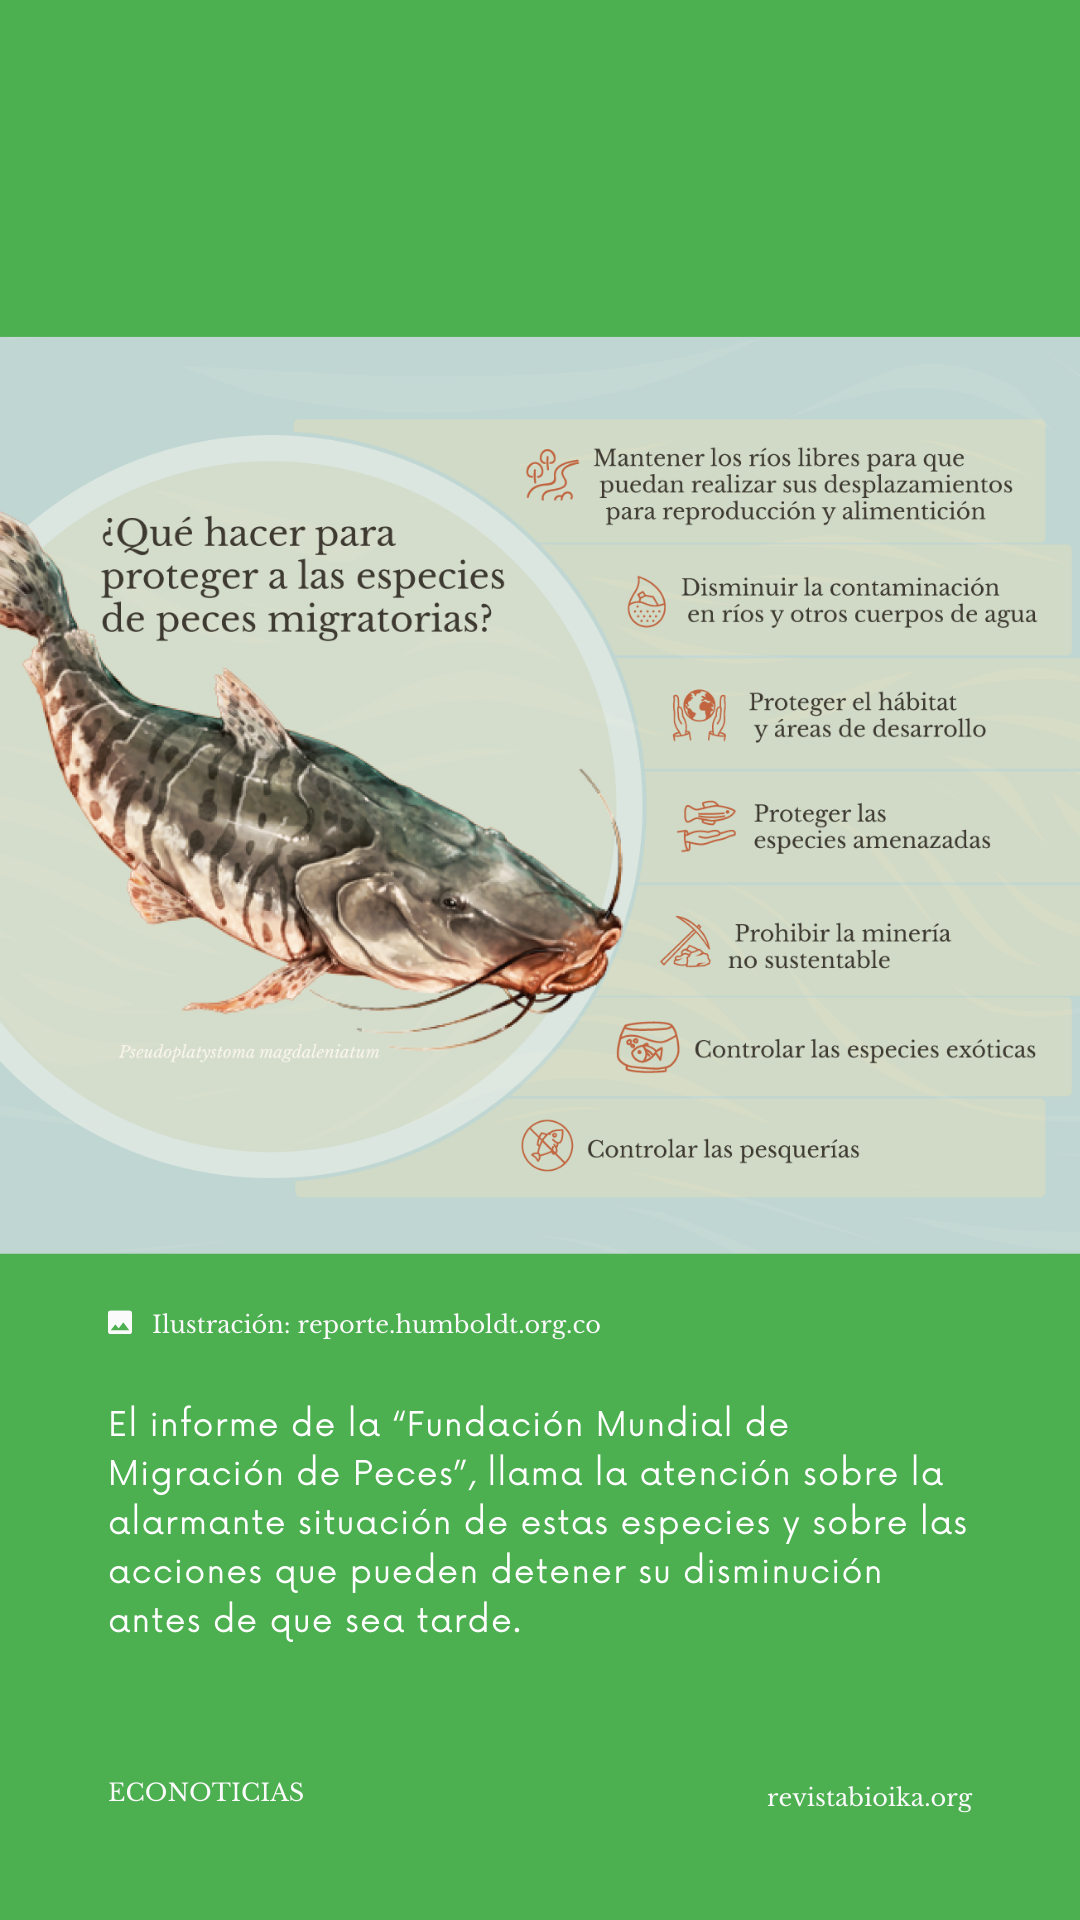 Alarmante disminución global de peces migradores en los últimos 50 años